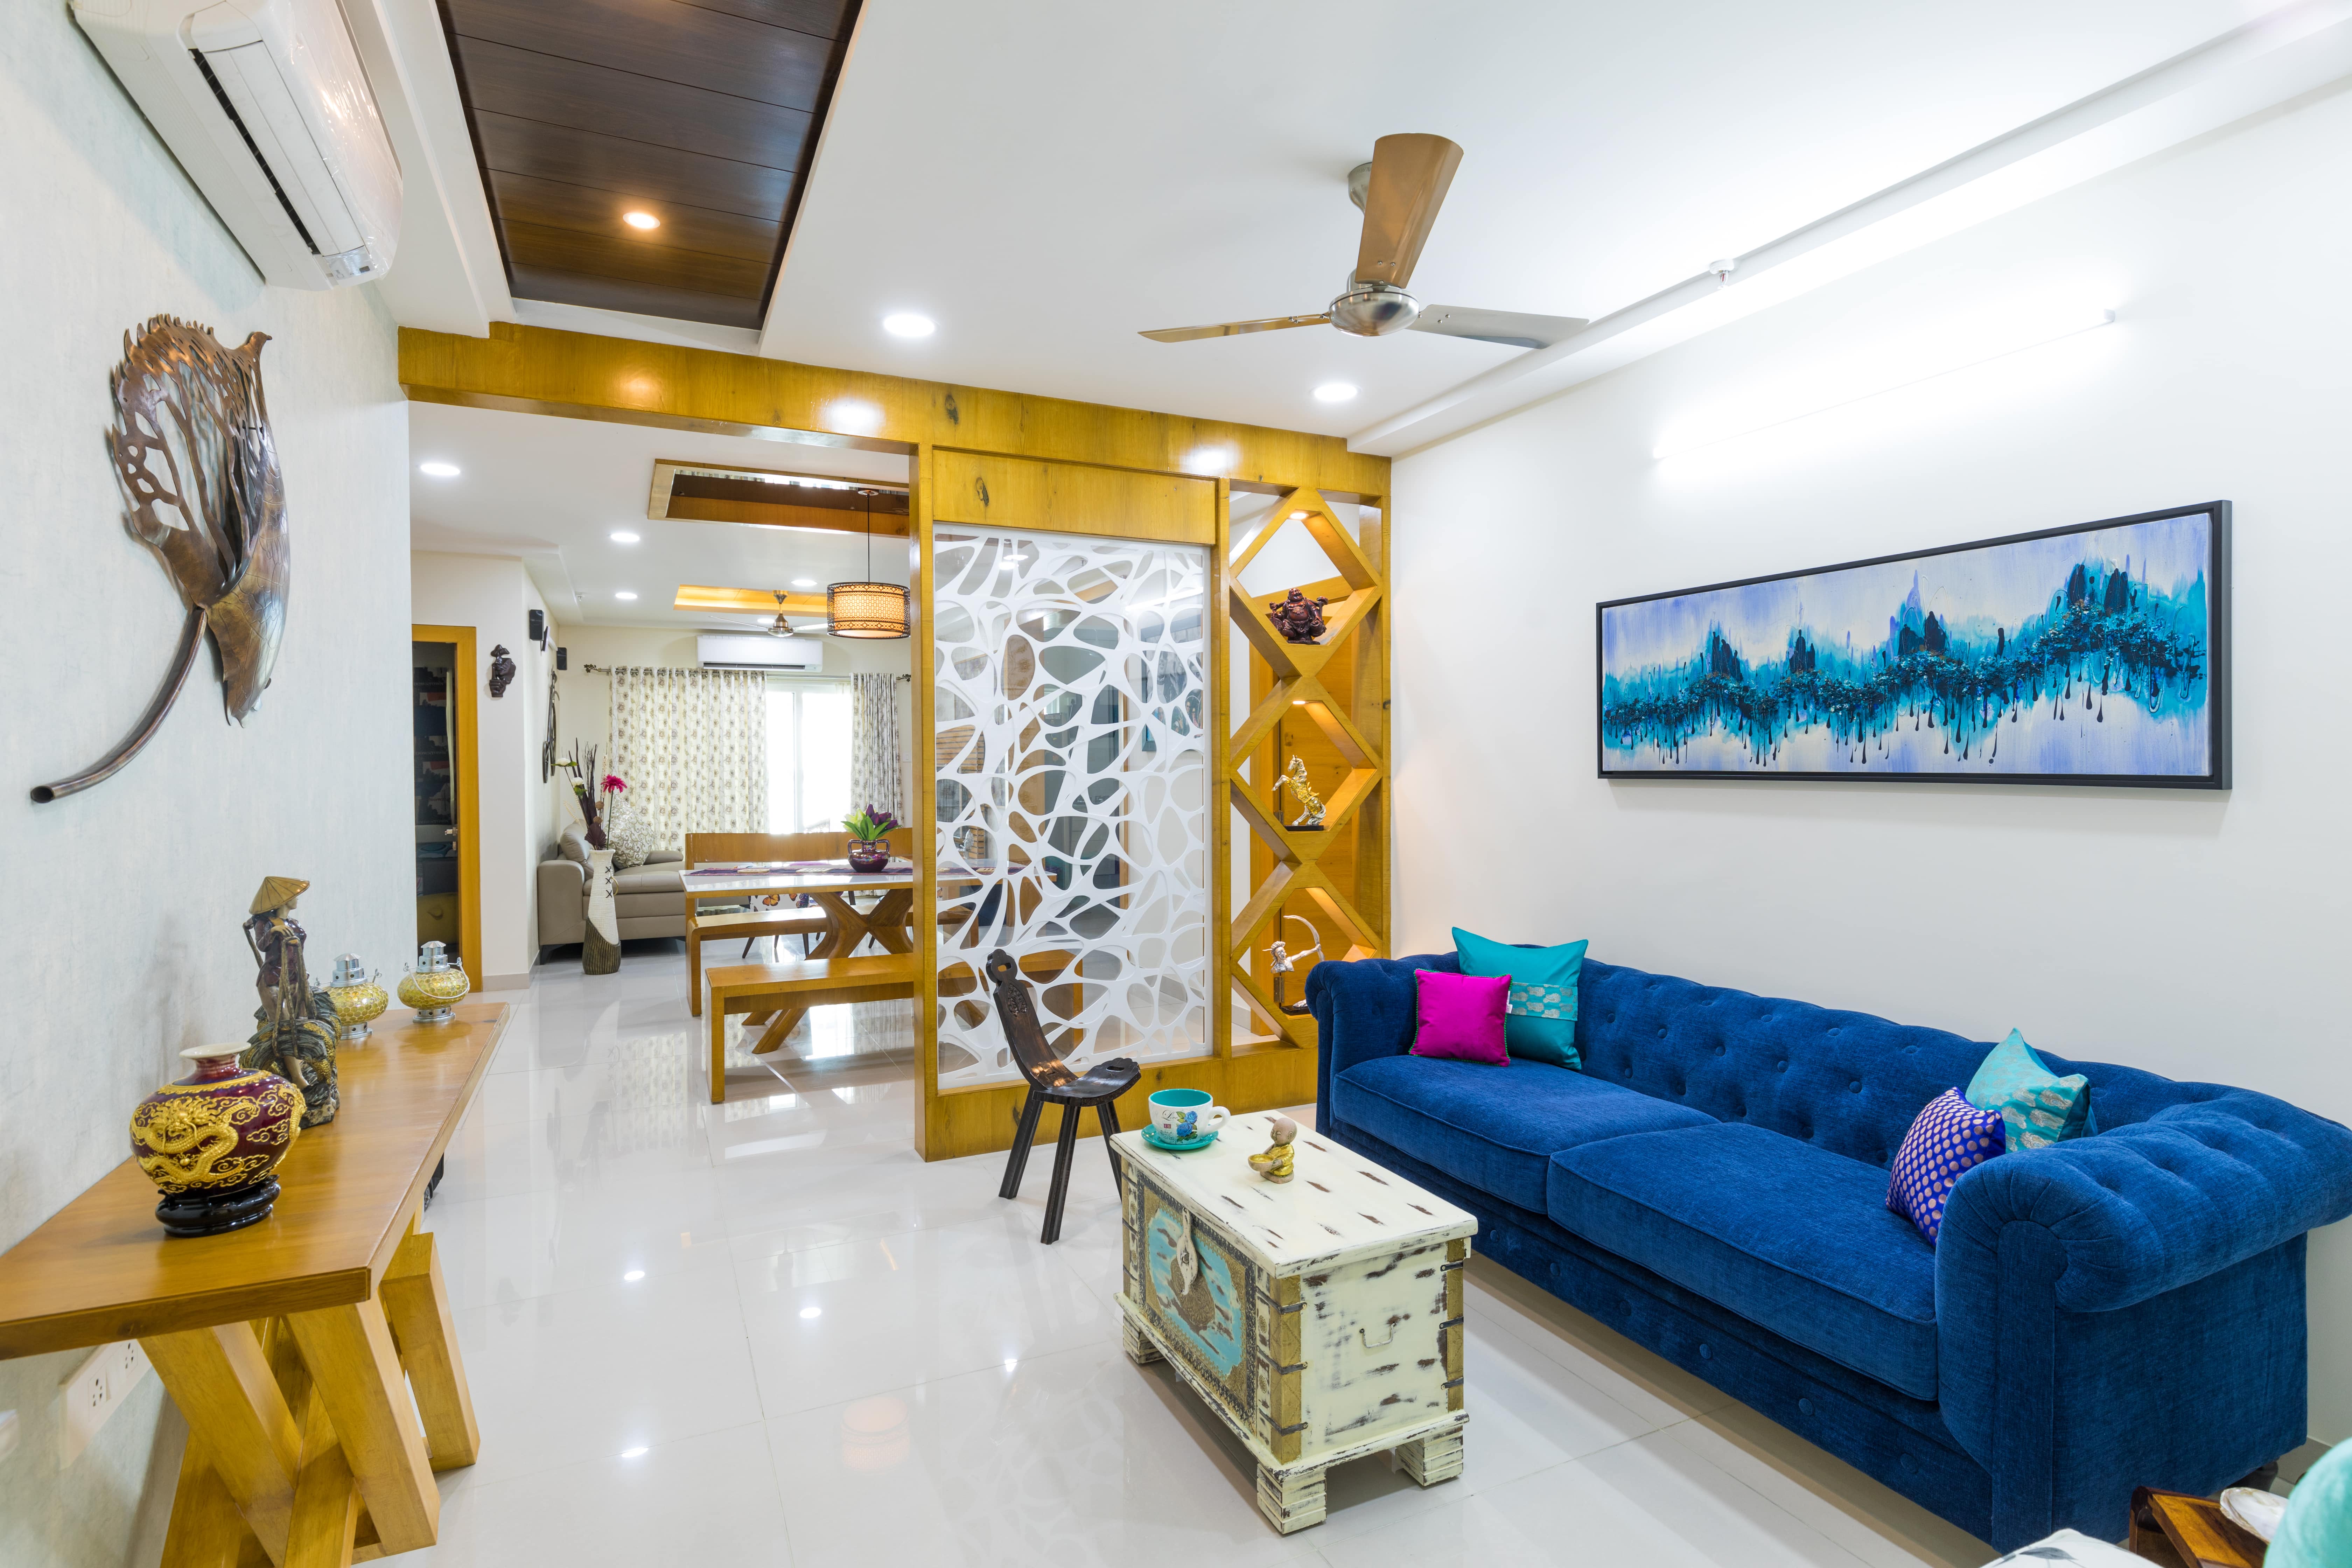 Luxury Interiors in India